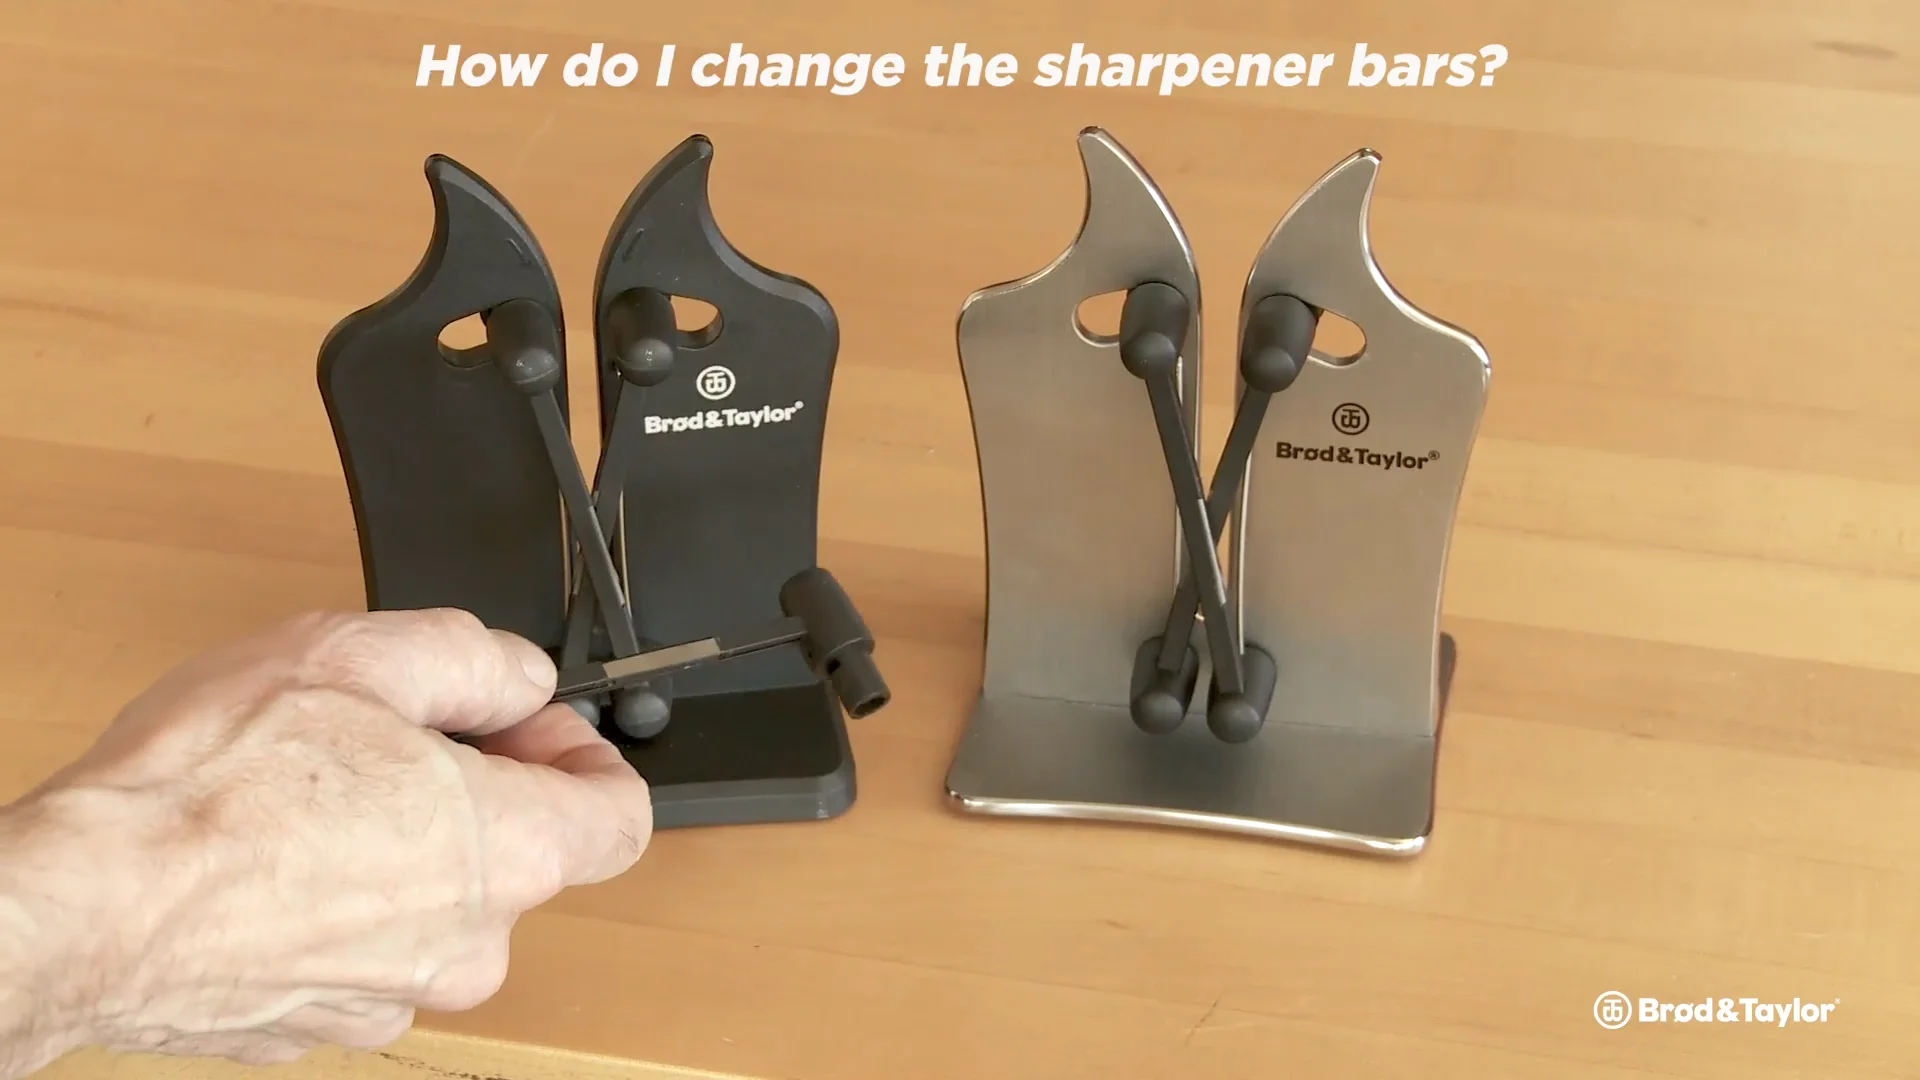 Knife Sharpener FAQ - How to Change the Sharpner Bars on Vimeo